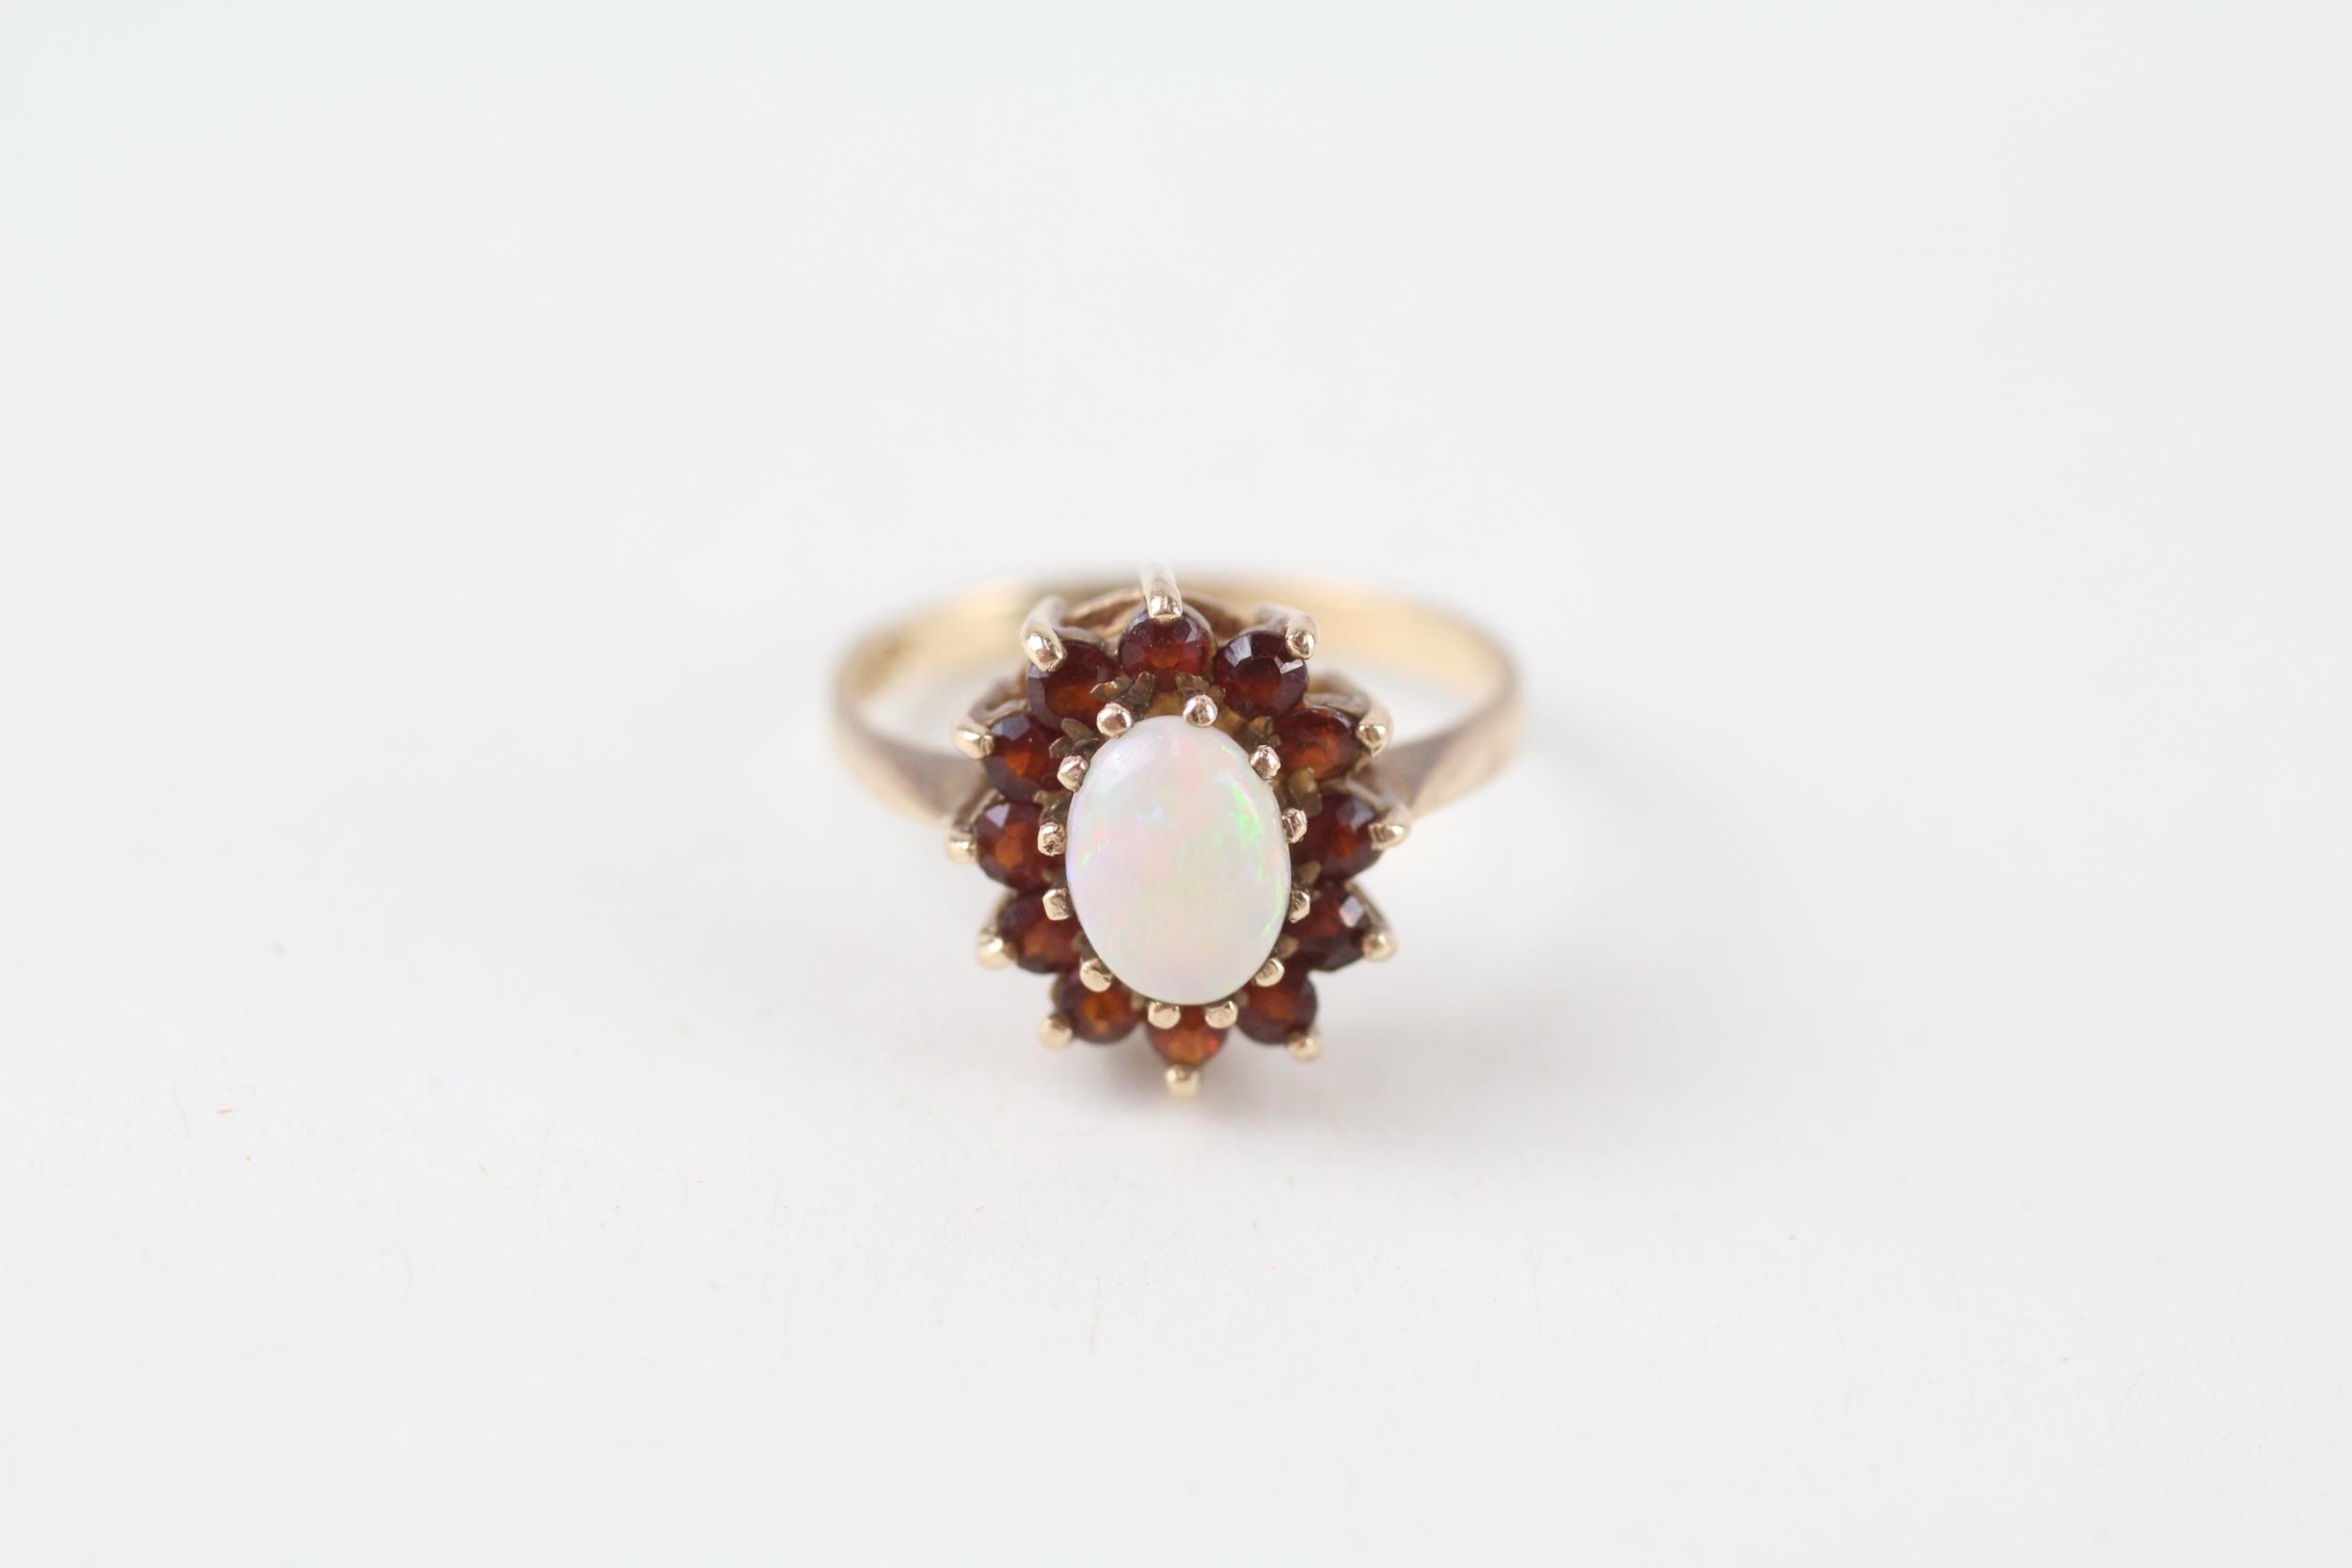 9ct gold vintage opal & garnet cluster ring (2.3g) Size K